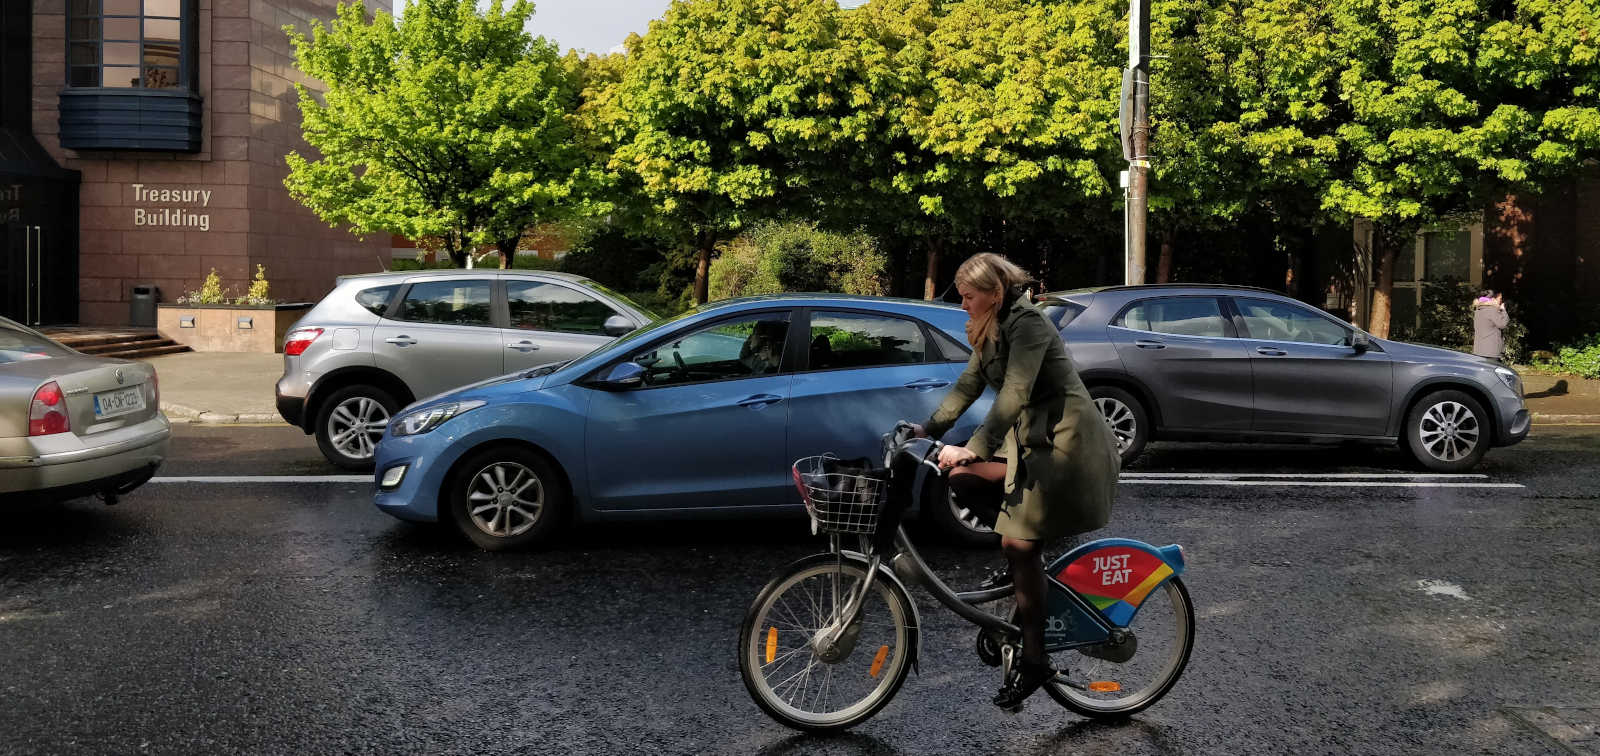 Mujer en bici y coche